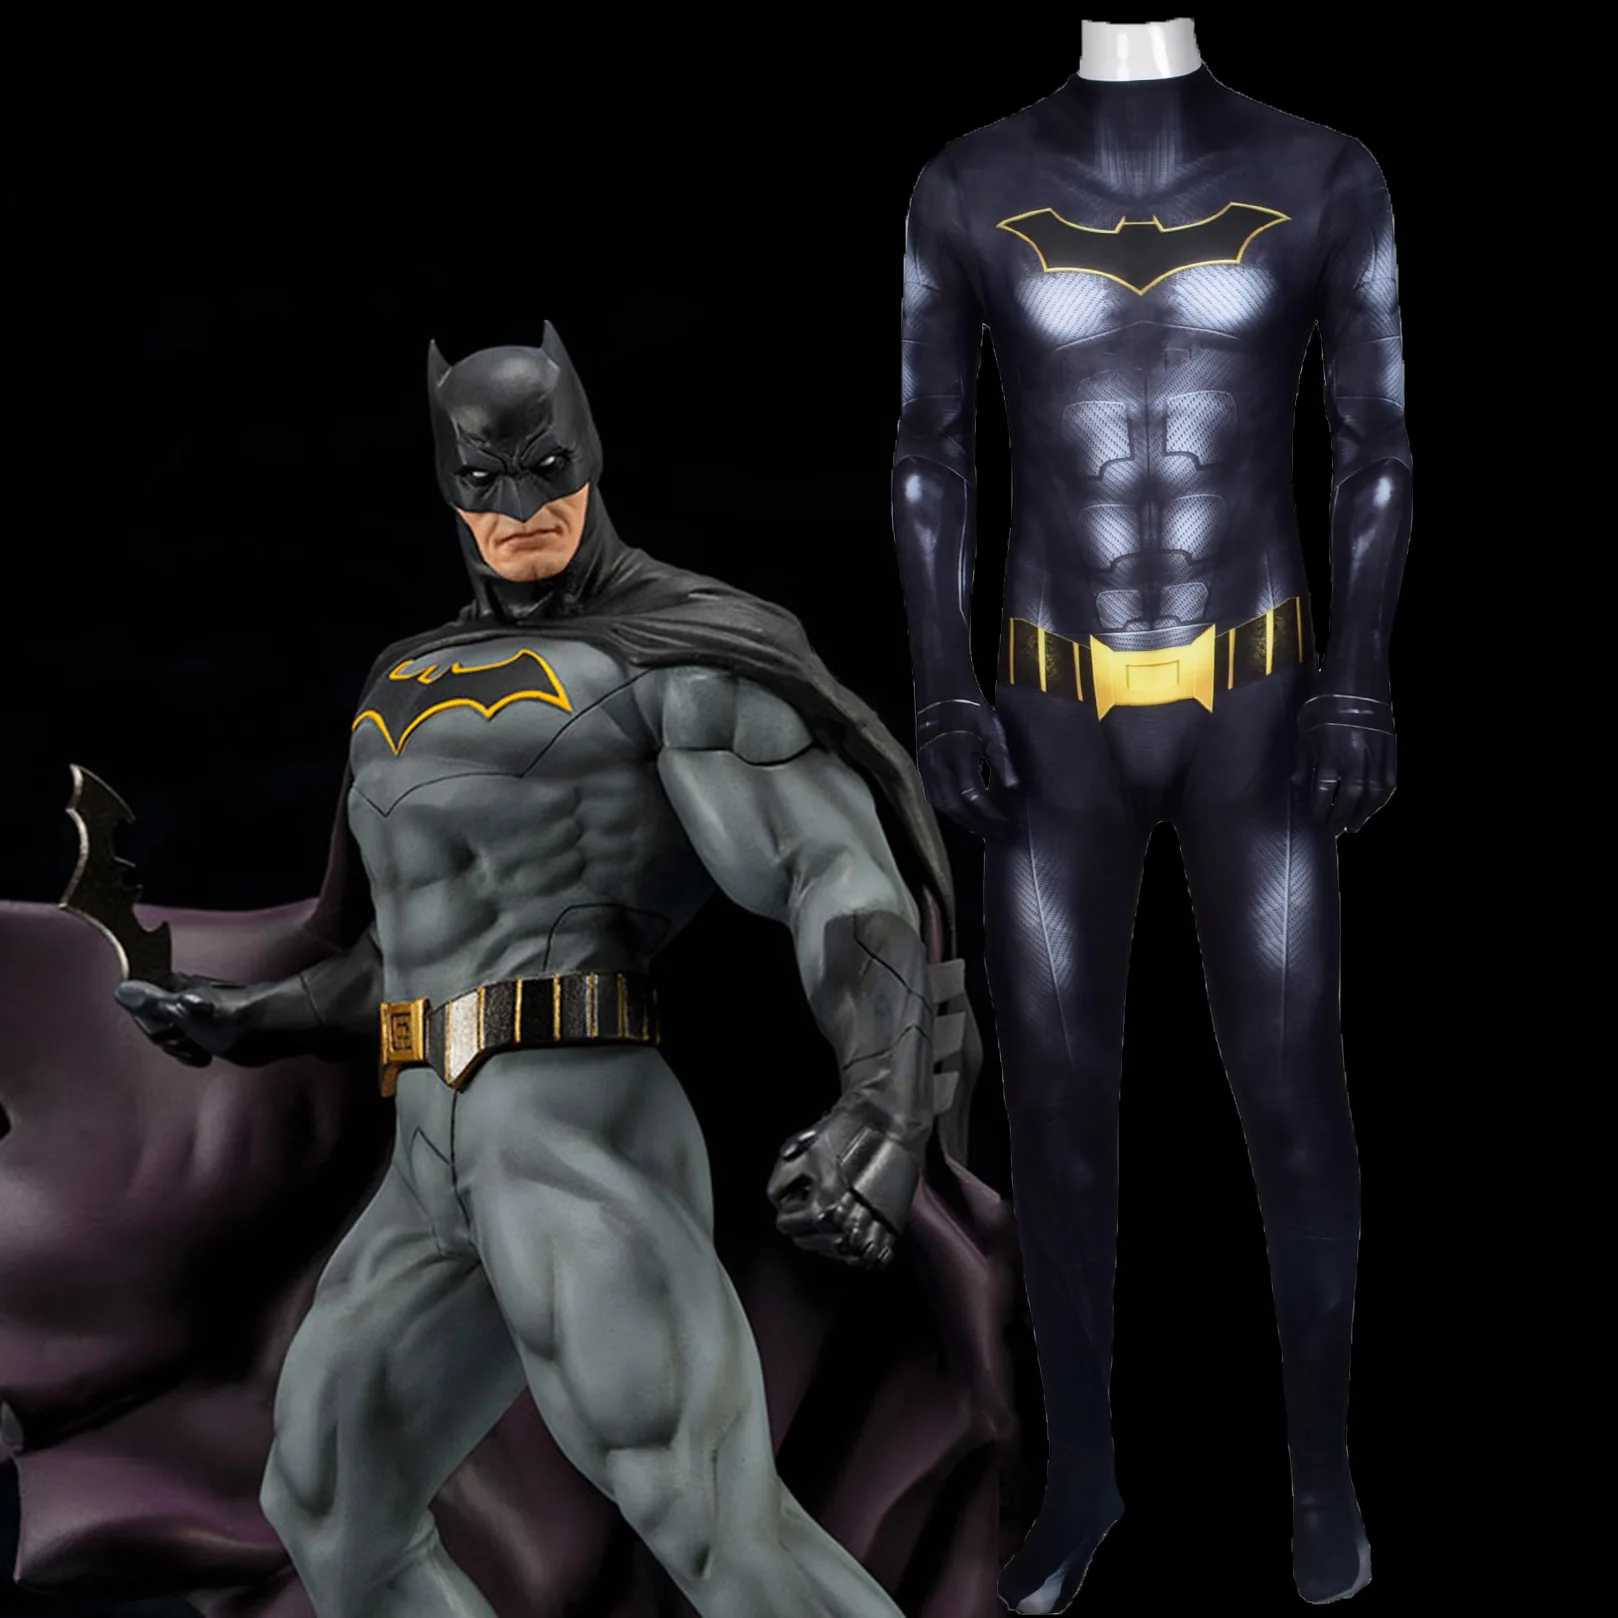 Костюм Бэтмена, косплей, маска, костюм Темного рыцаря Брюса Уэйна, костюм супергероя на Хэллоуин, зентай, боди, комбинезон для детей, мужчин, взрослых